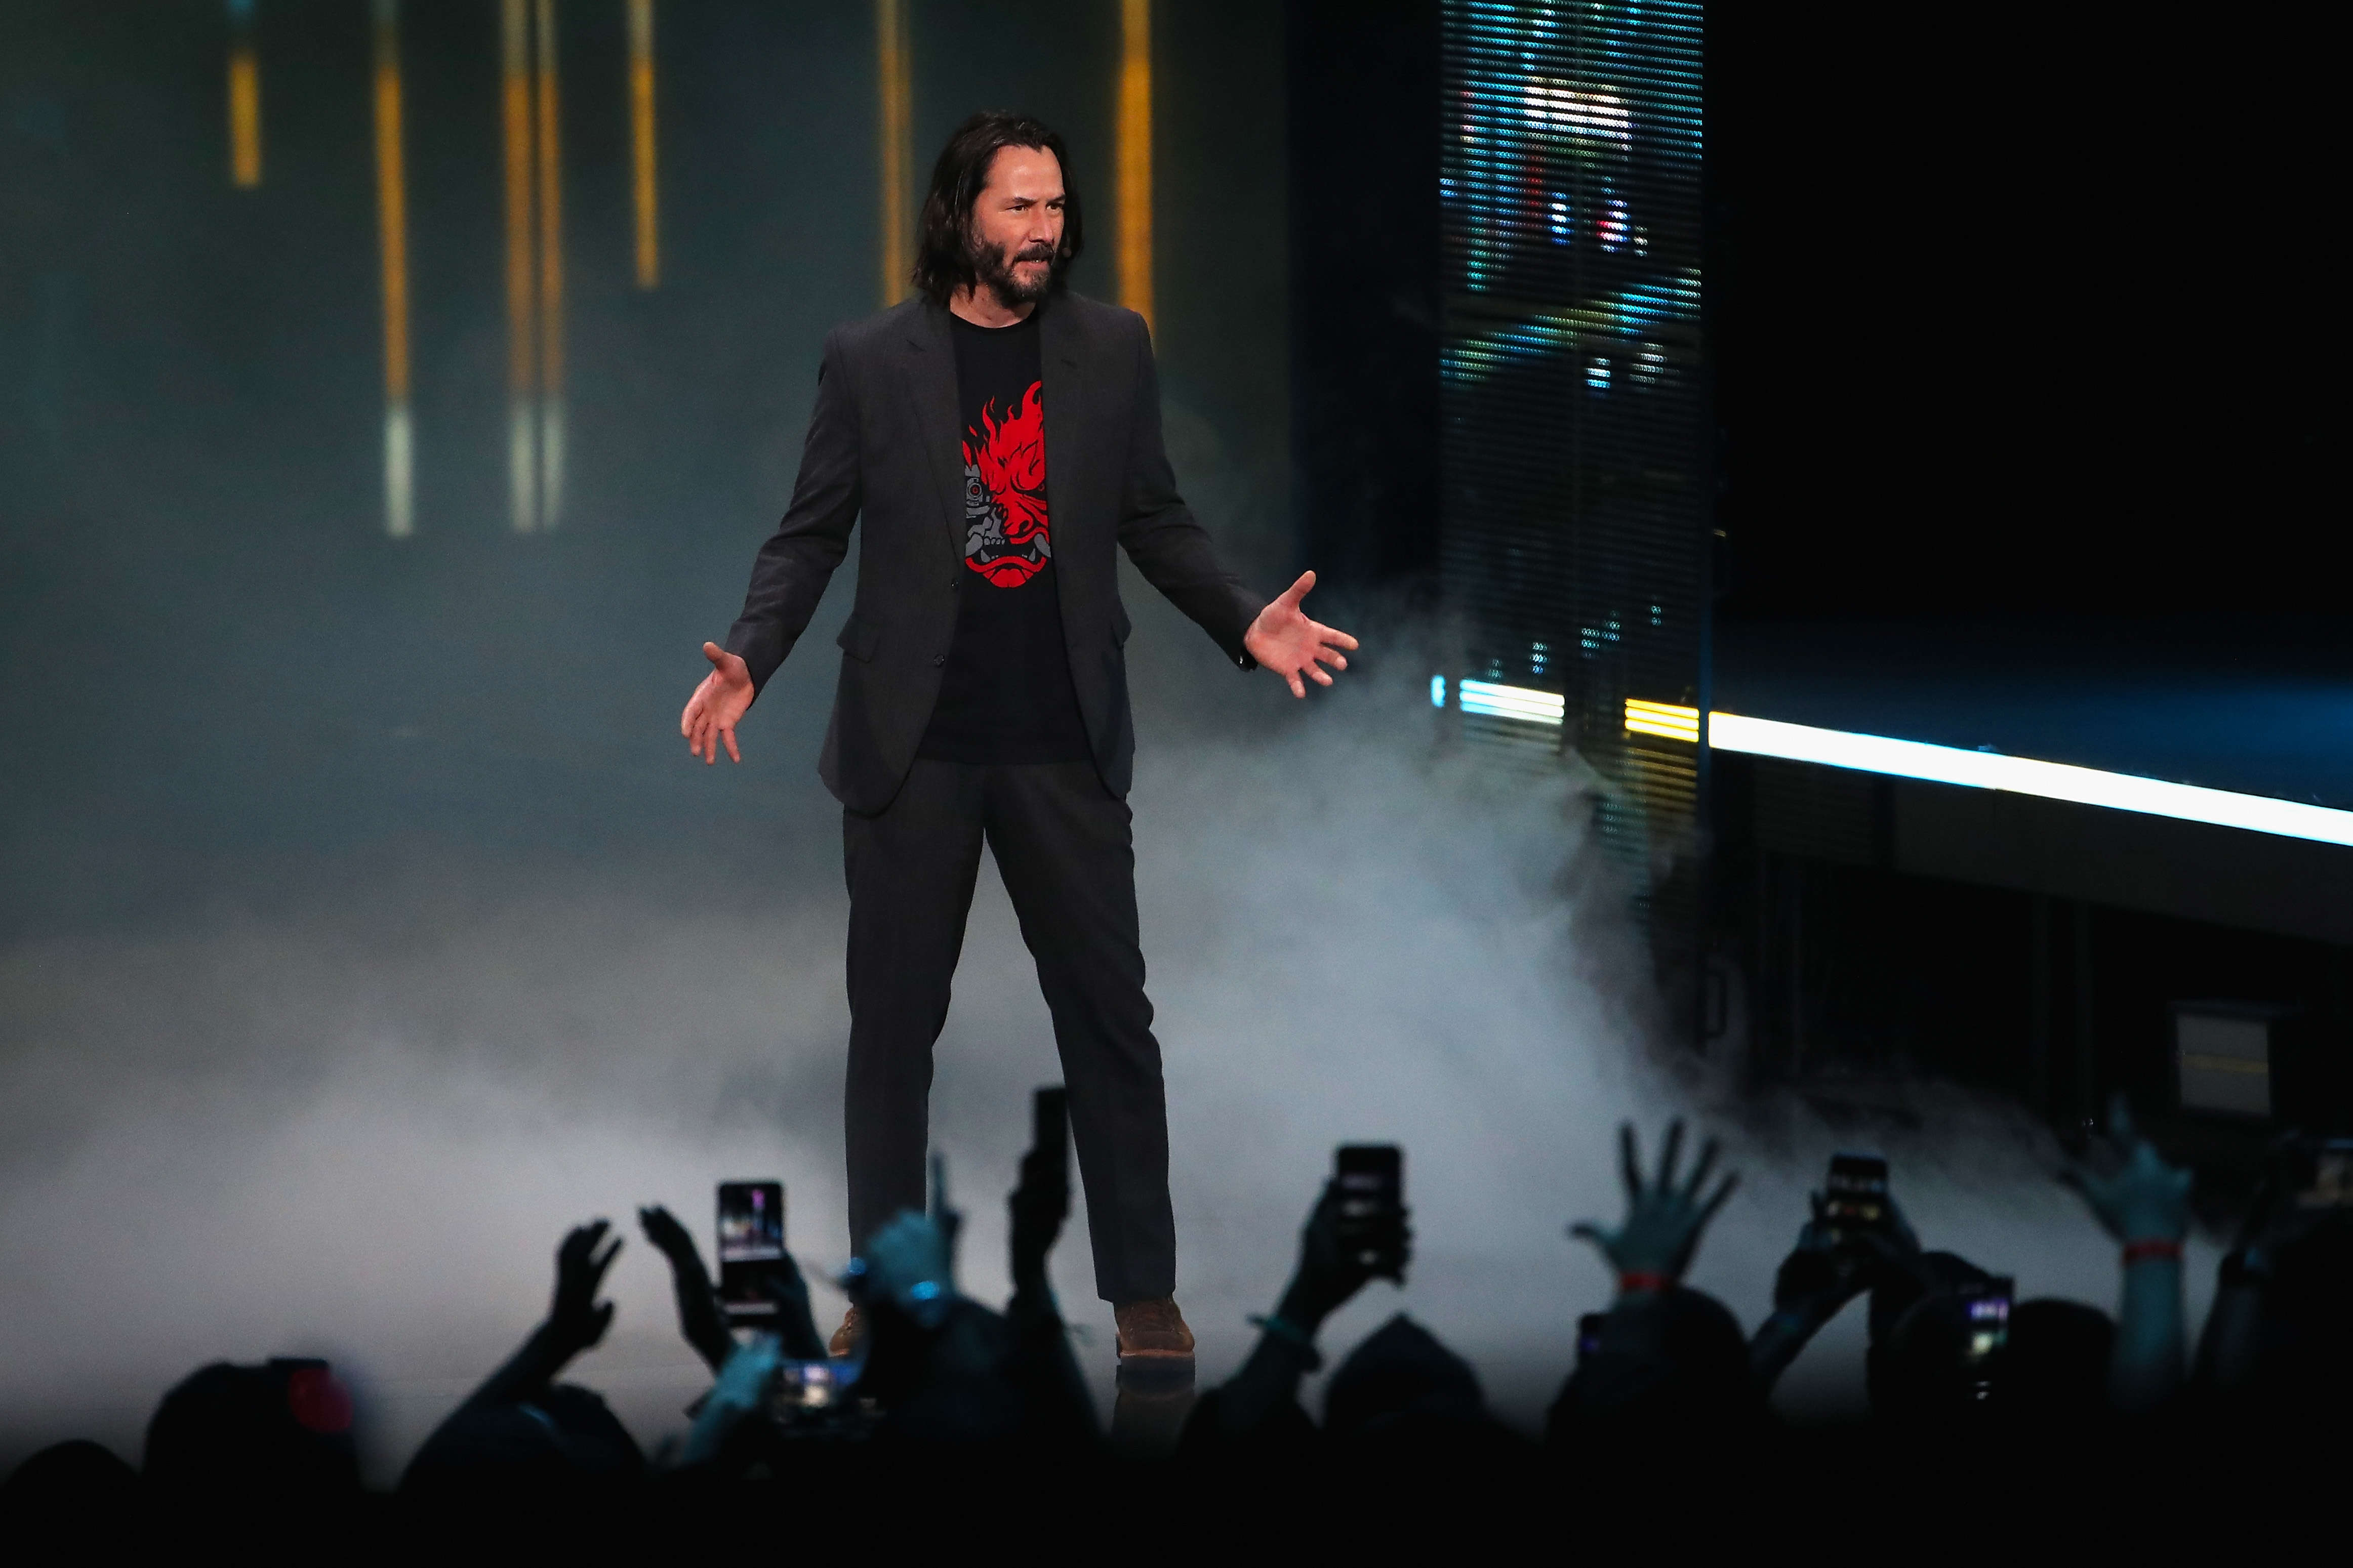 Keanu Reeves at the Microsoft showcase at E3 2019